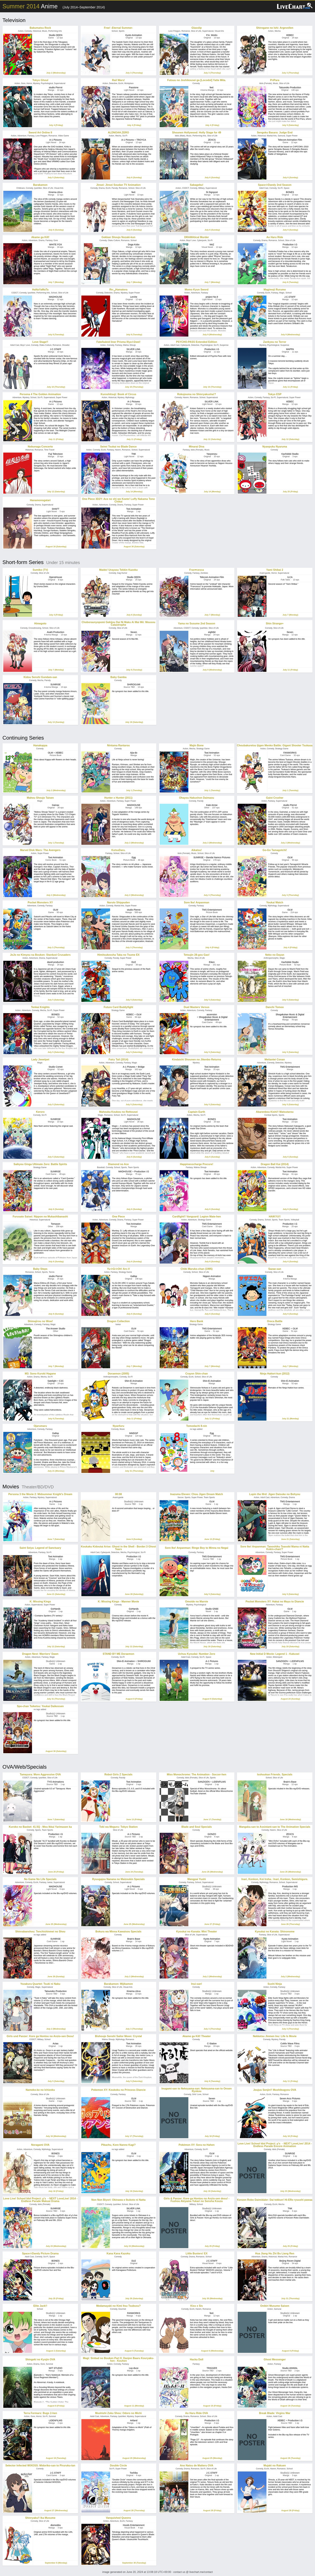 Anime Summer 2014 Crunchyroll